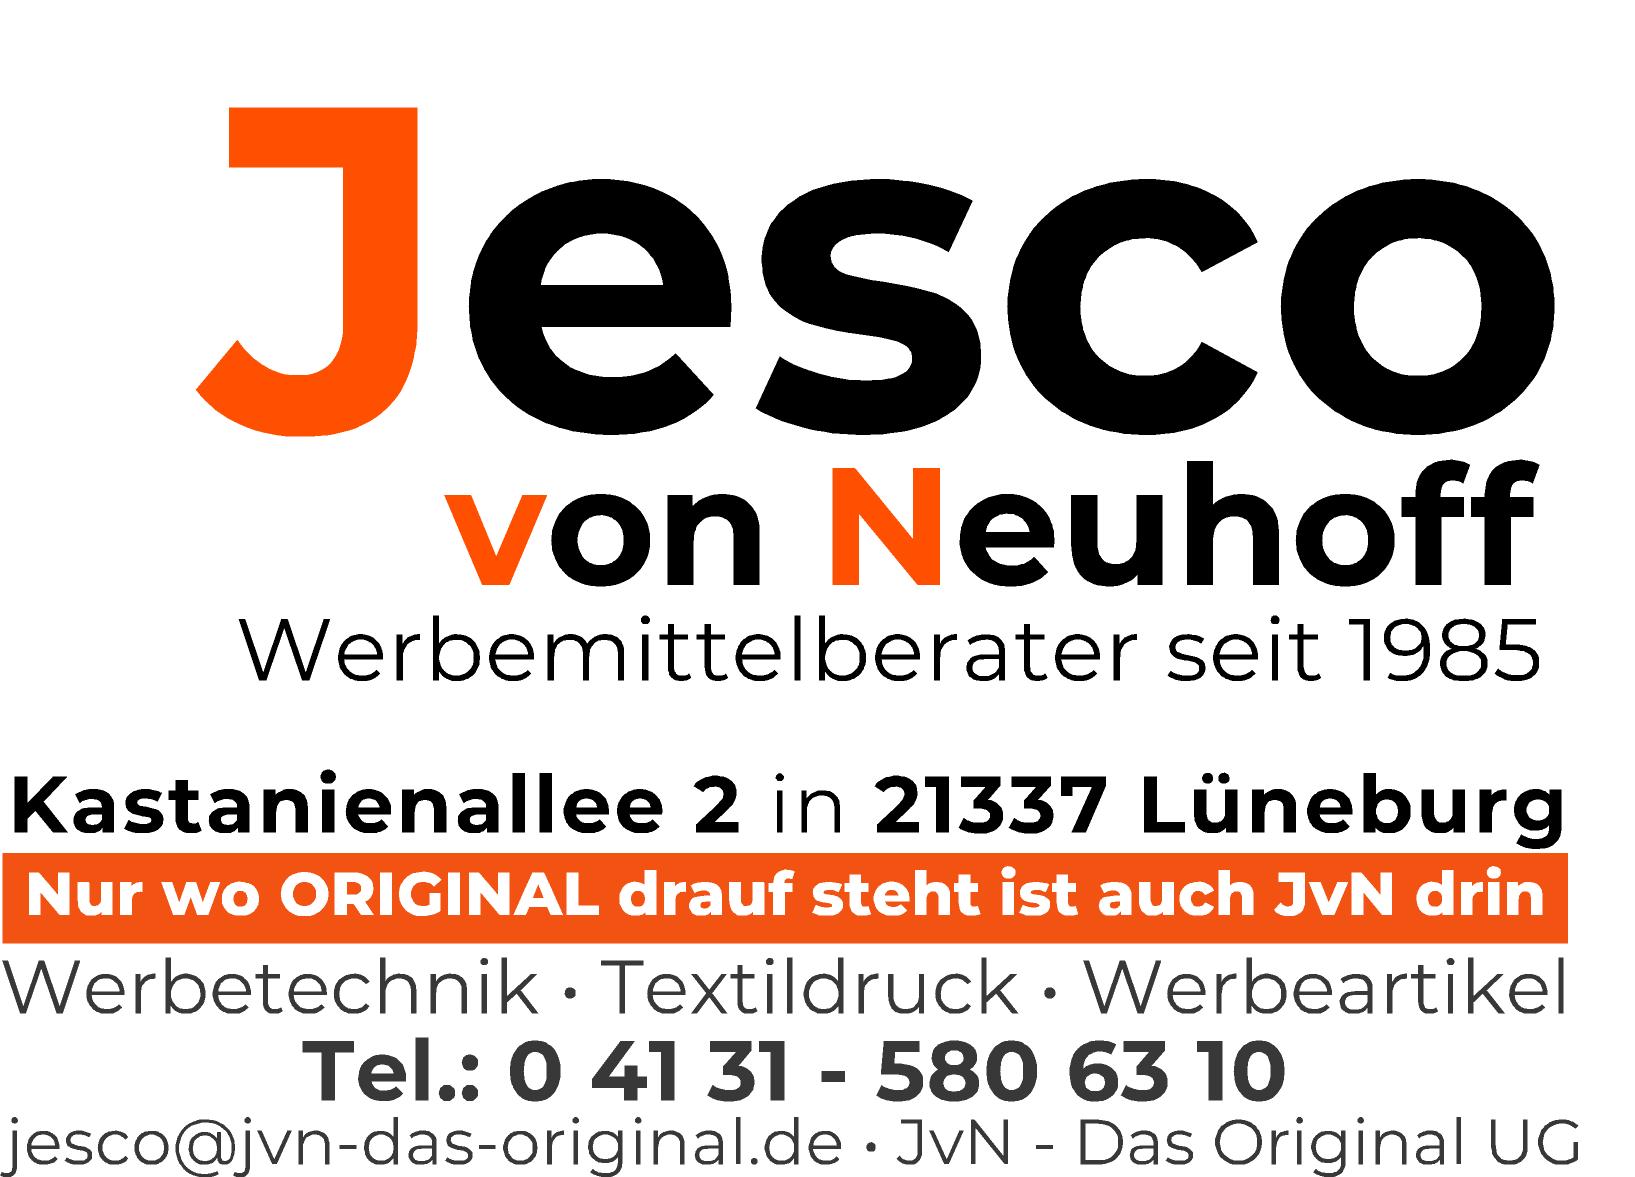 JvN - Das Original UG; Jesco von Neuhoff